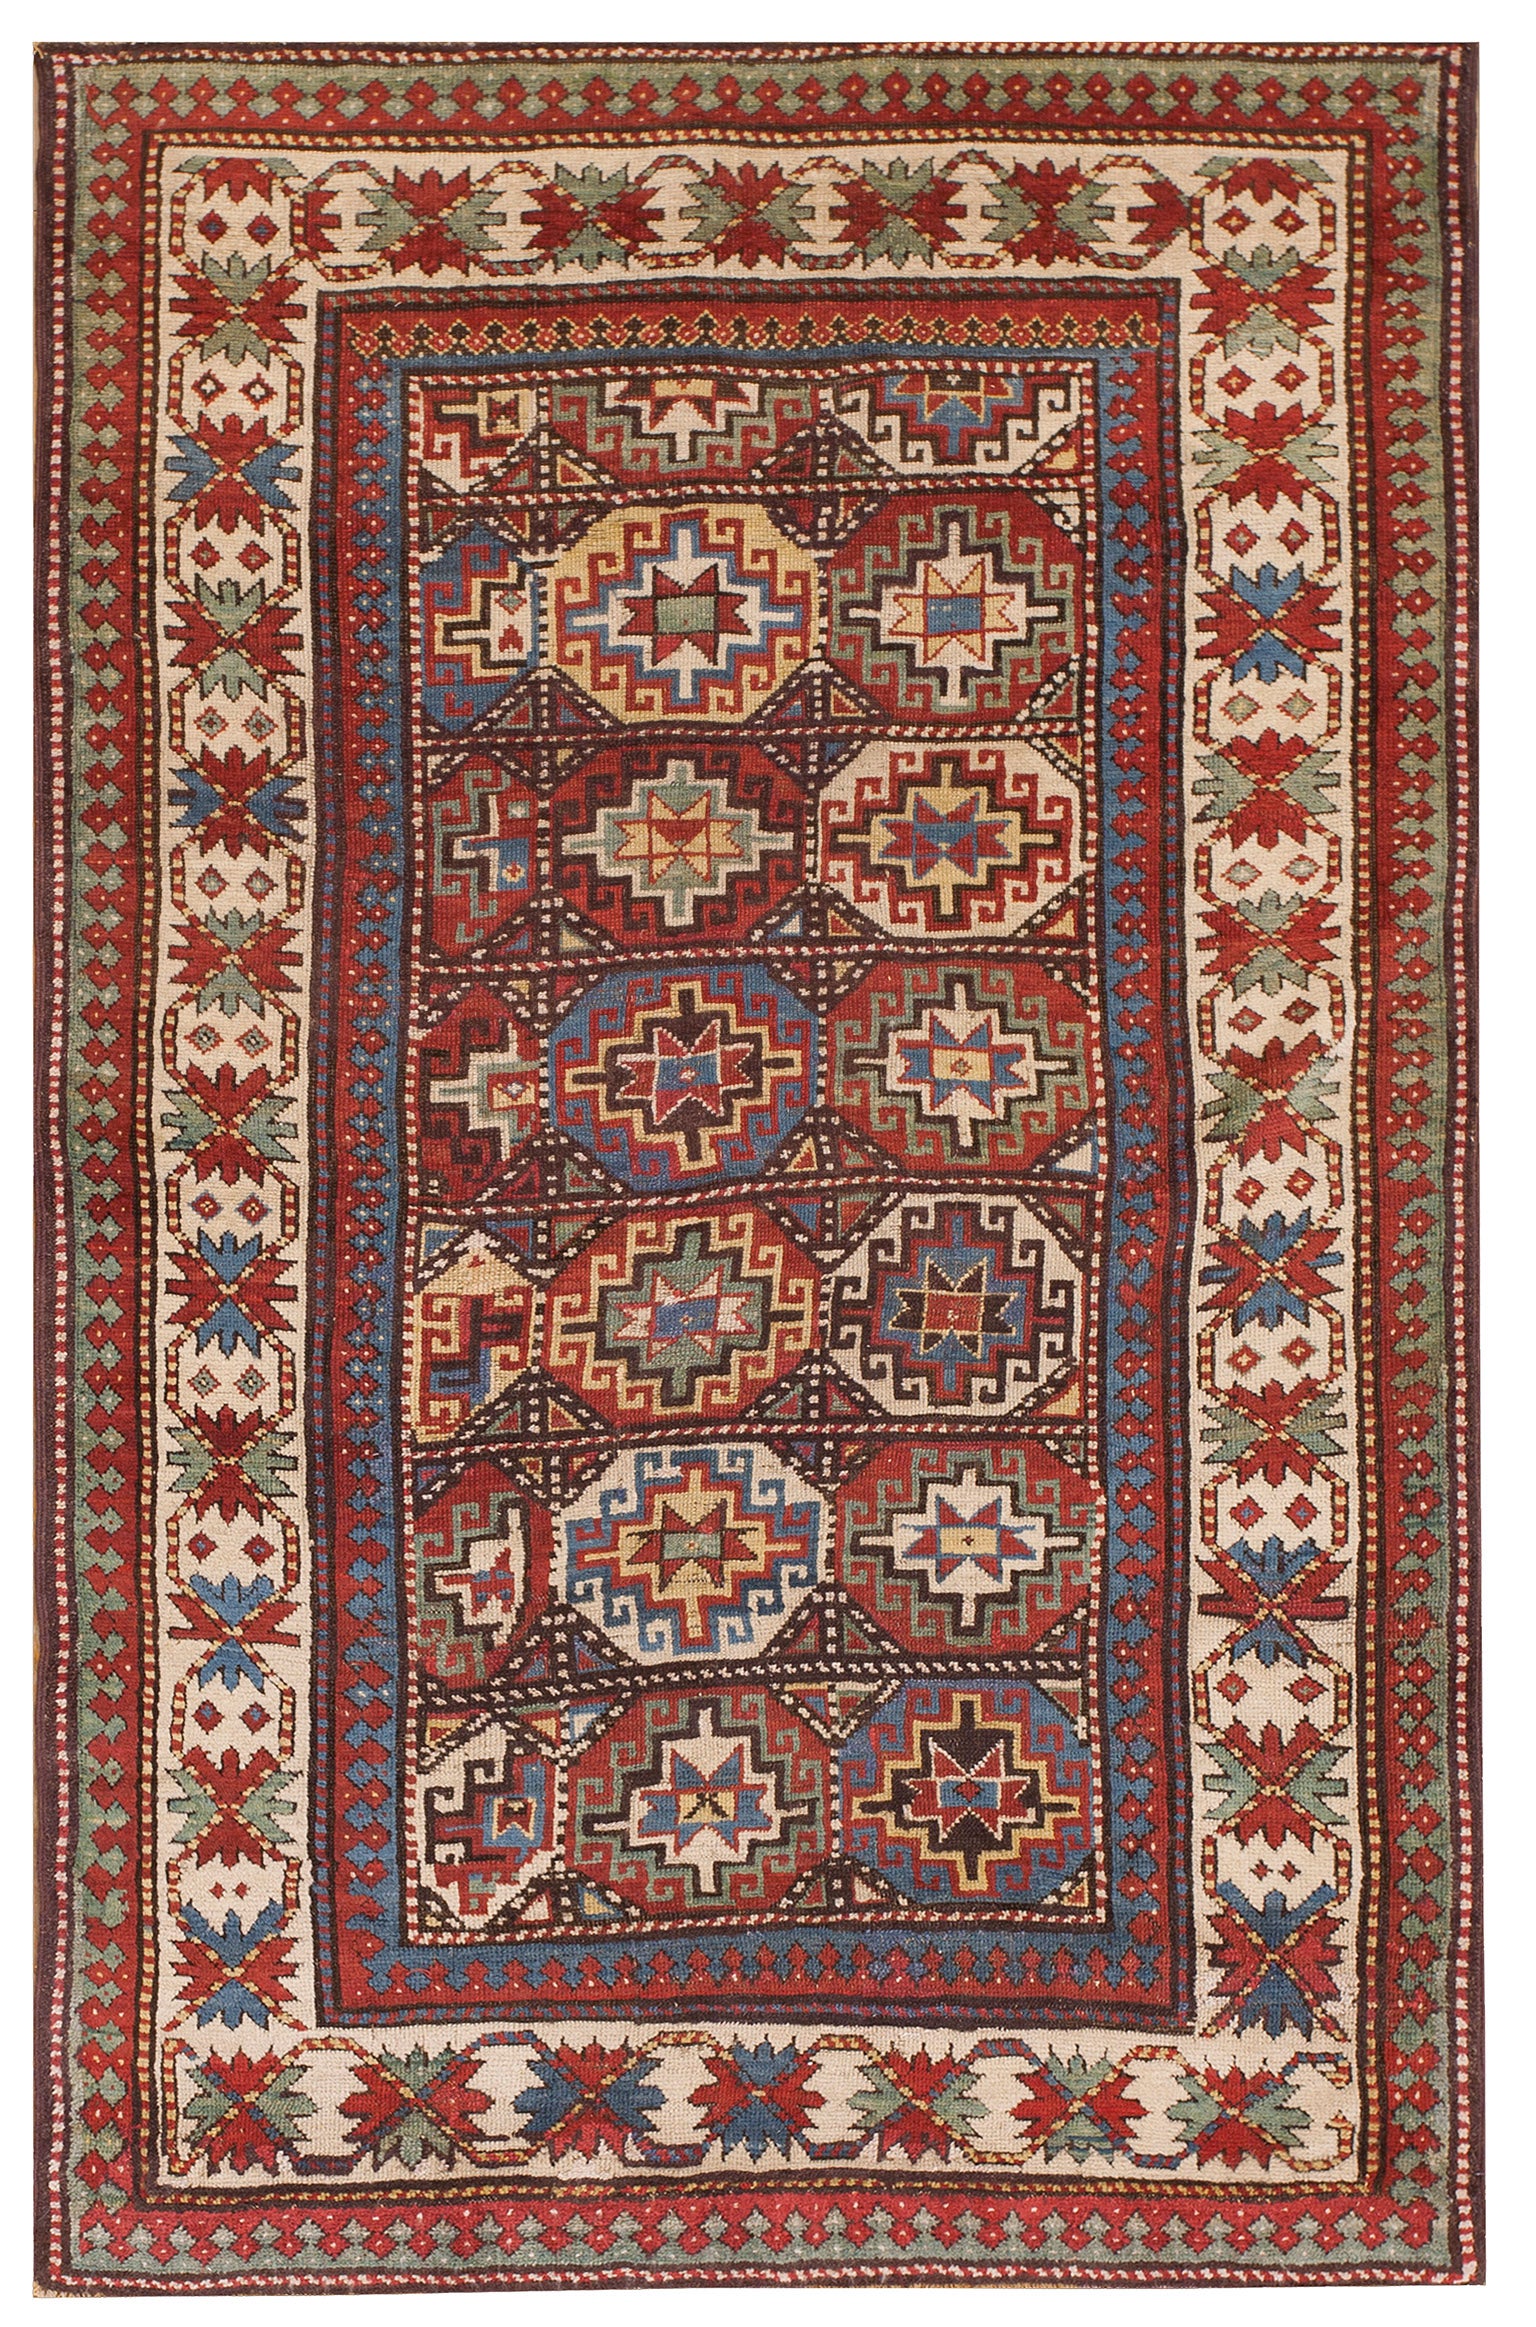 Kaukasischer Kasachischer Teppich des 19. Jahrhunderts ( 4'2" x 6'8" - 127 x 203")